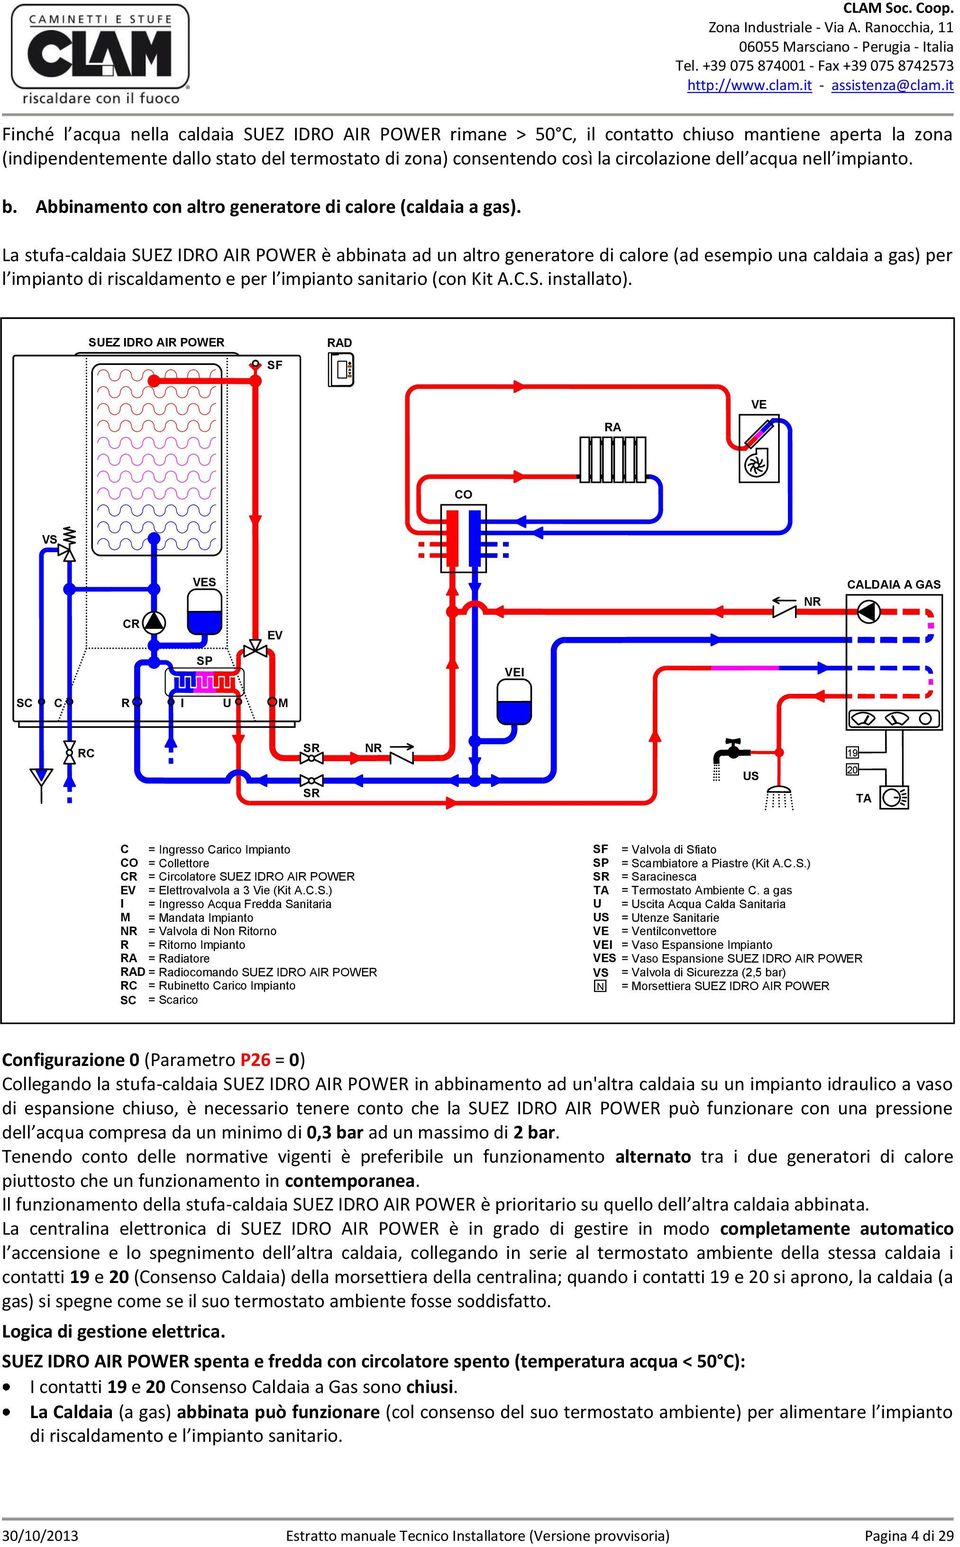 La stufa-caldaia SUEZ IDRO AIR POWER è abbinata ad un altro generatore di calore (ad esempio una caldaia a gas) per l impianto di riscaldamento e per l impianto sanitario (con Kit A.C.S. installato).